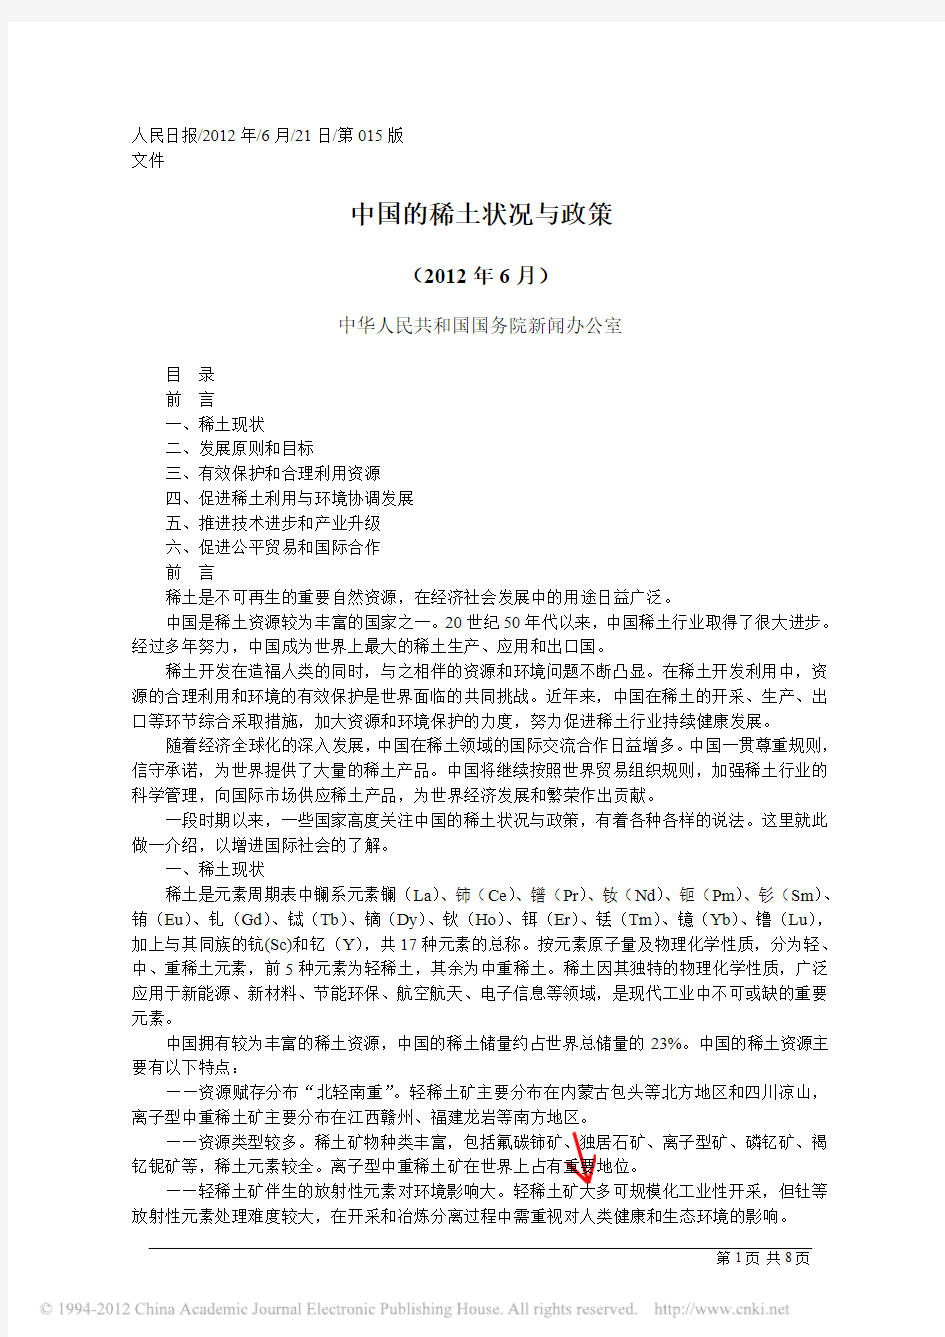 中国的稀土状况与政策_中华人民共和国国务院新闻办公室